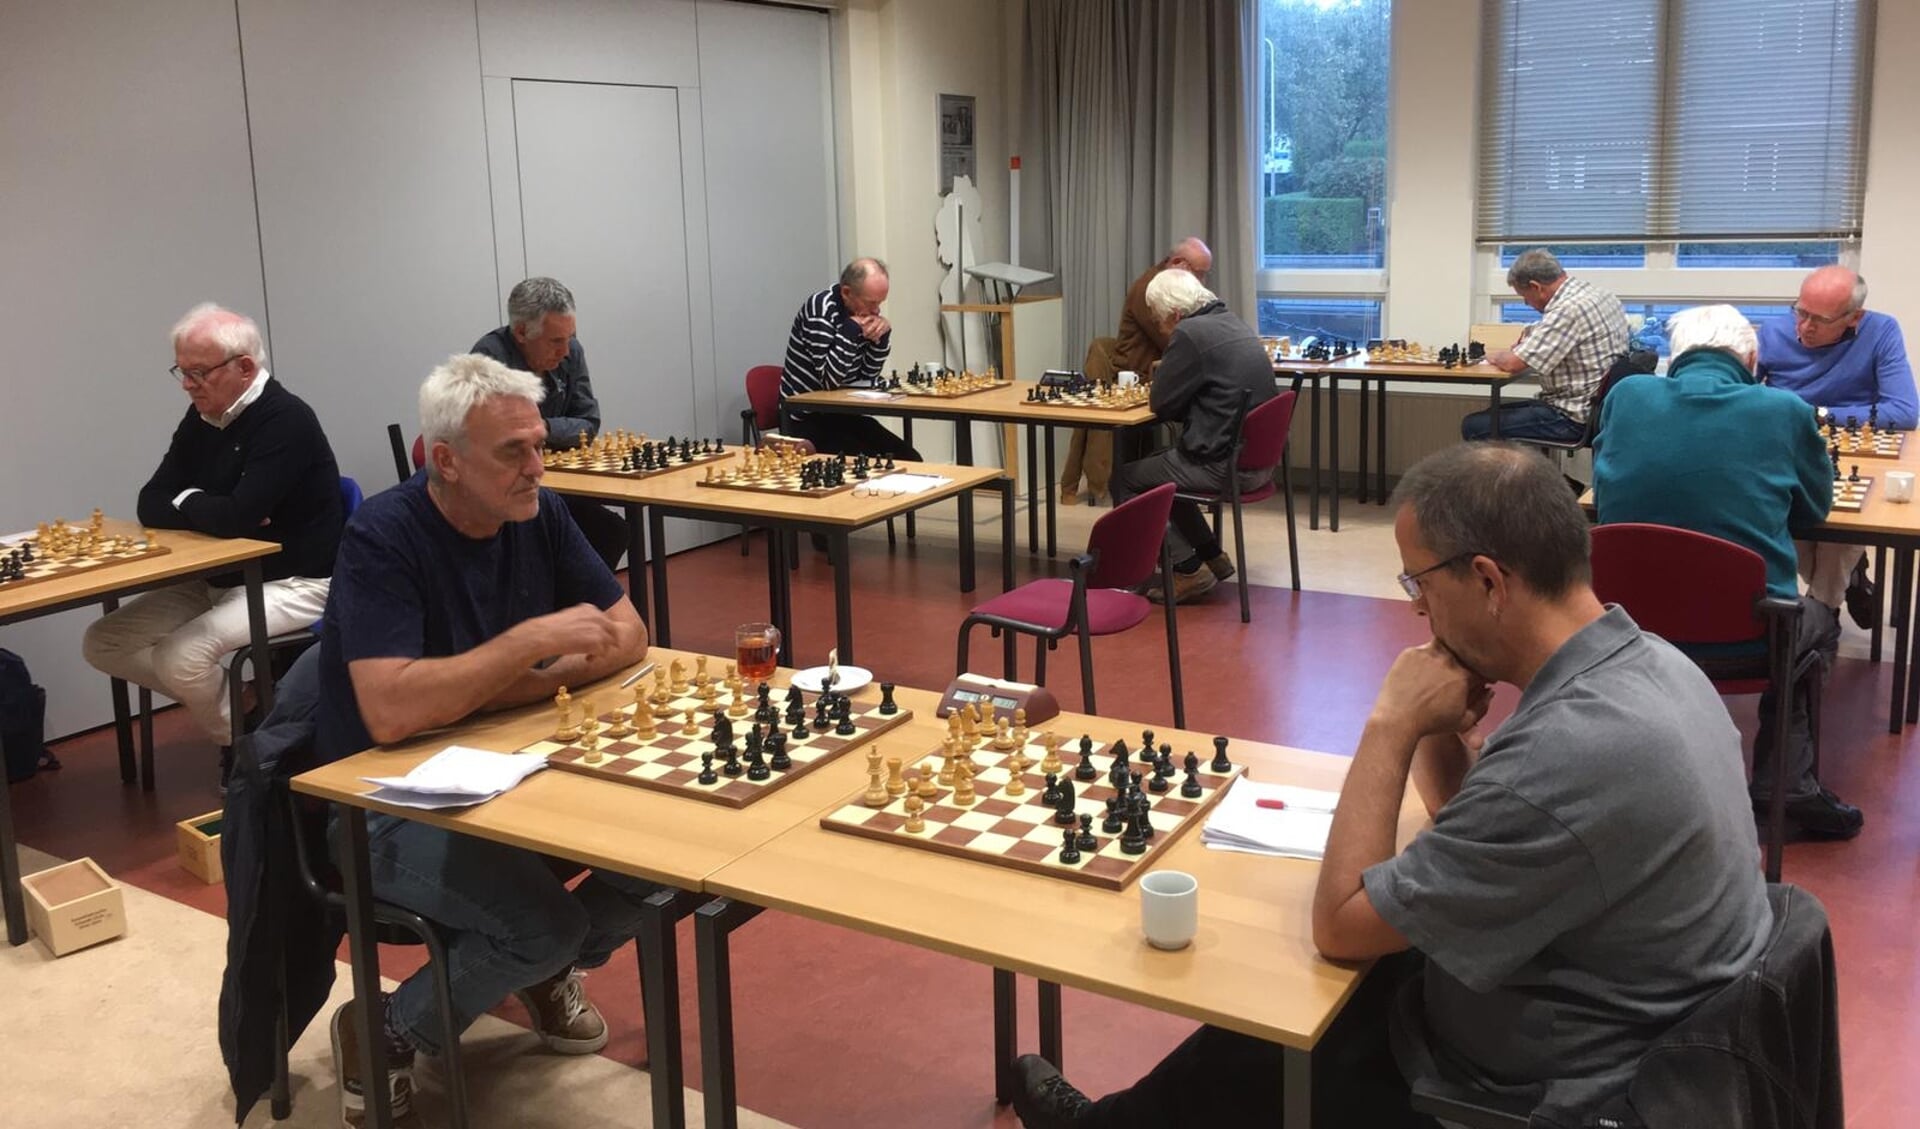 De schakers van de Sassenheimse Schaakverenigingen schaken op anderhalve meter van elkaar. Tijdens de wedstrijd hebben ze ieder een eigen bord. | Foto: pr.